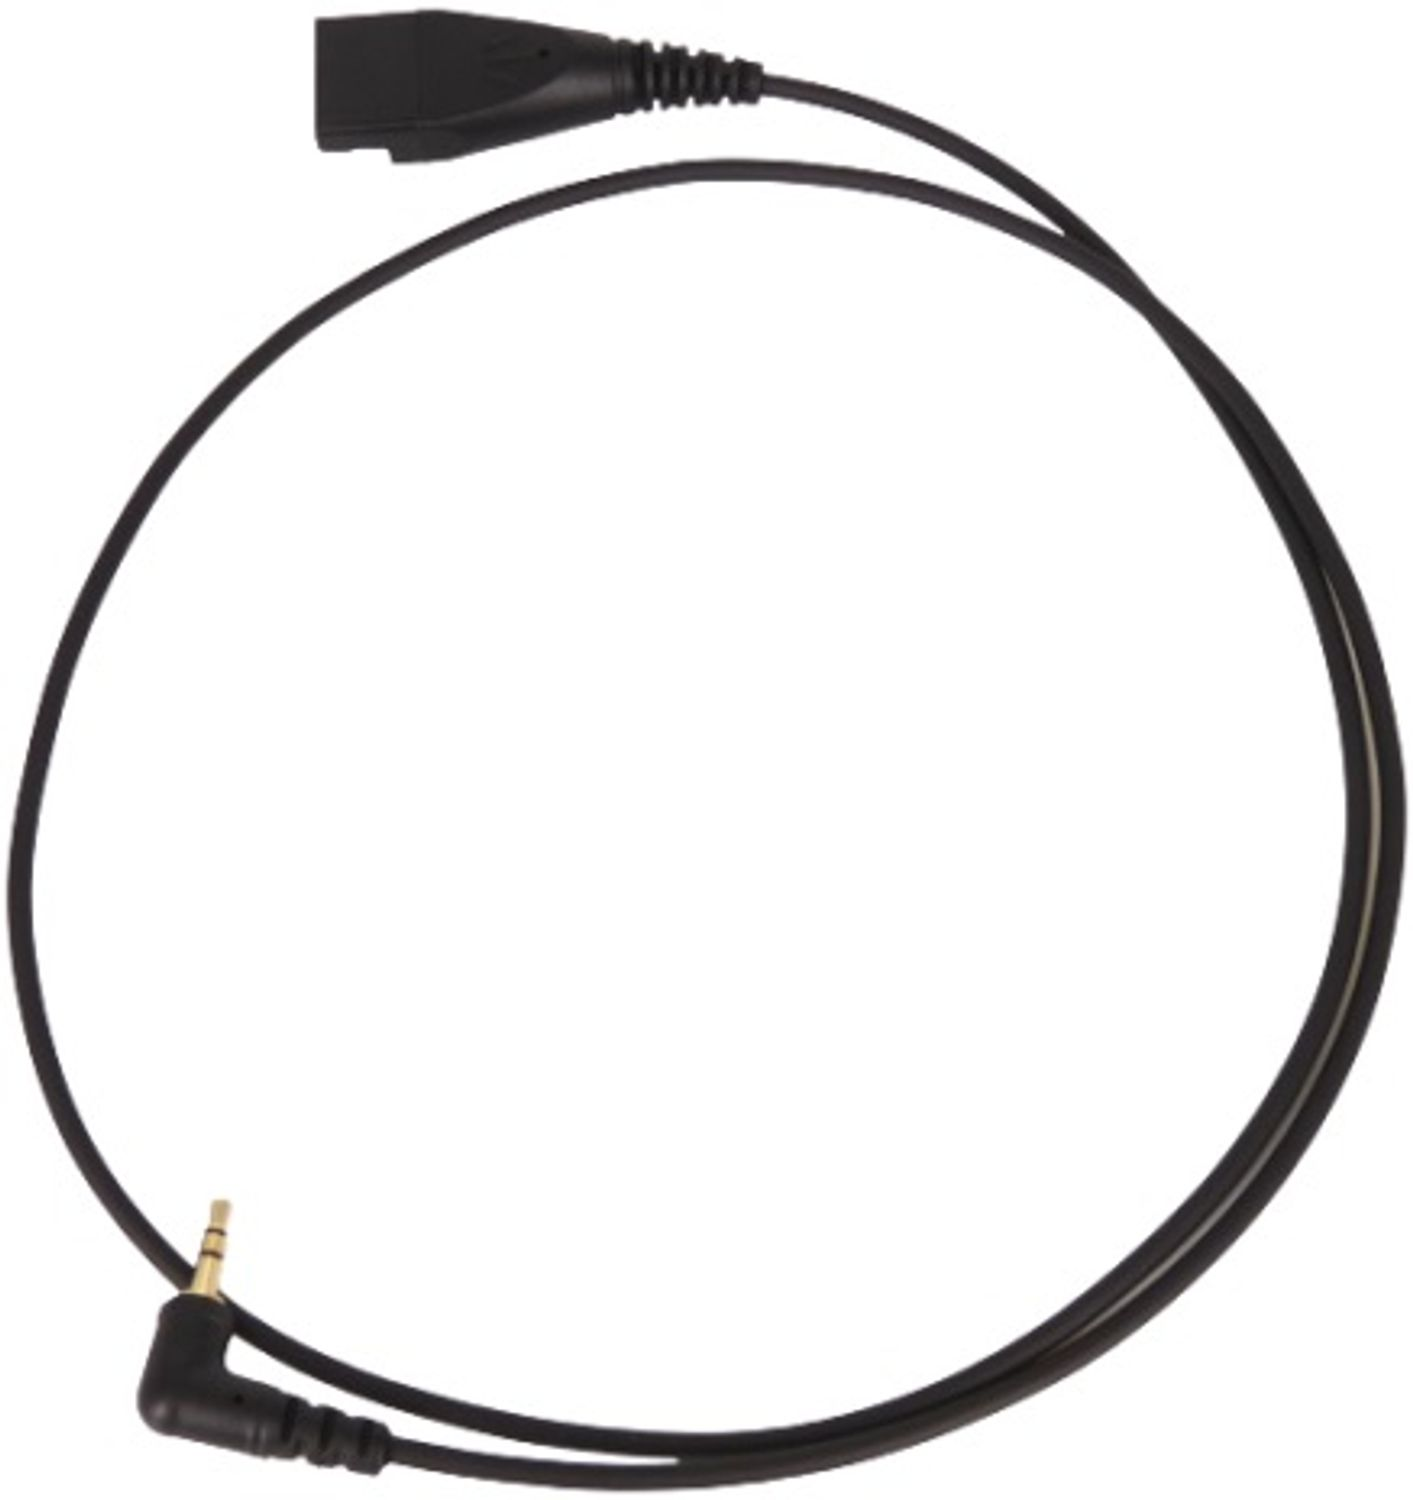 GEQUDIO 2,5mm-Klinke-Kabel kompatibel mit Gigaset, Schwarz für Telefon Zubehör Panasonic Headset